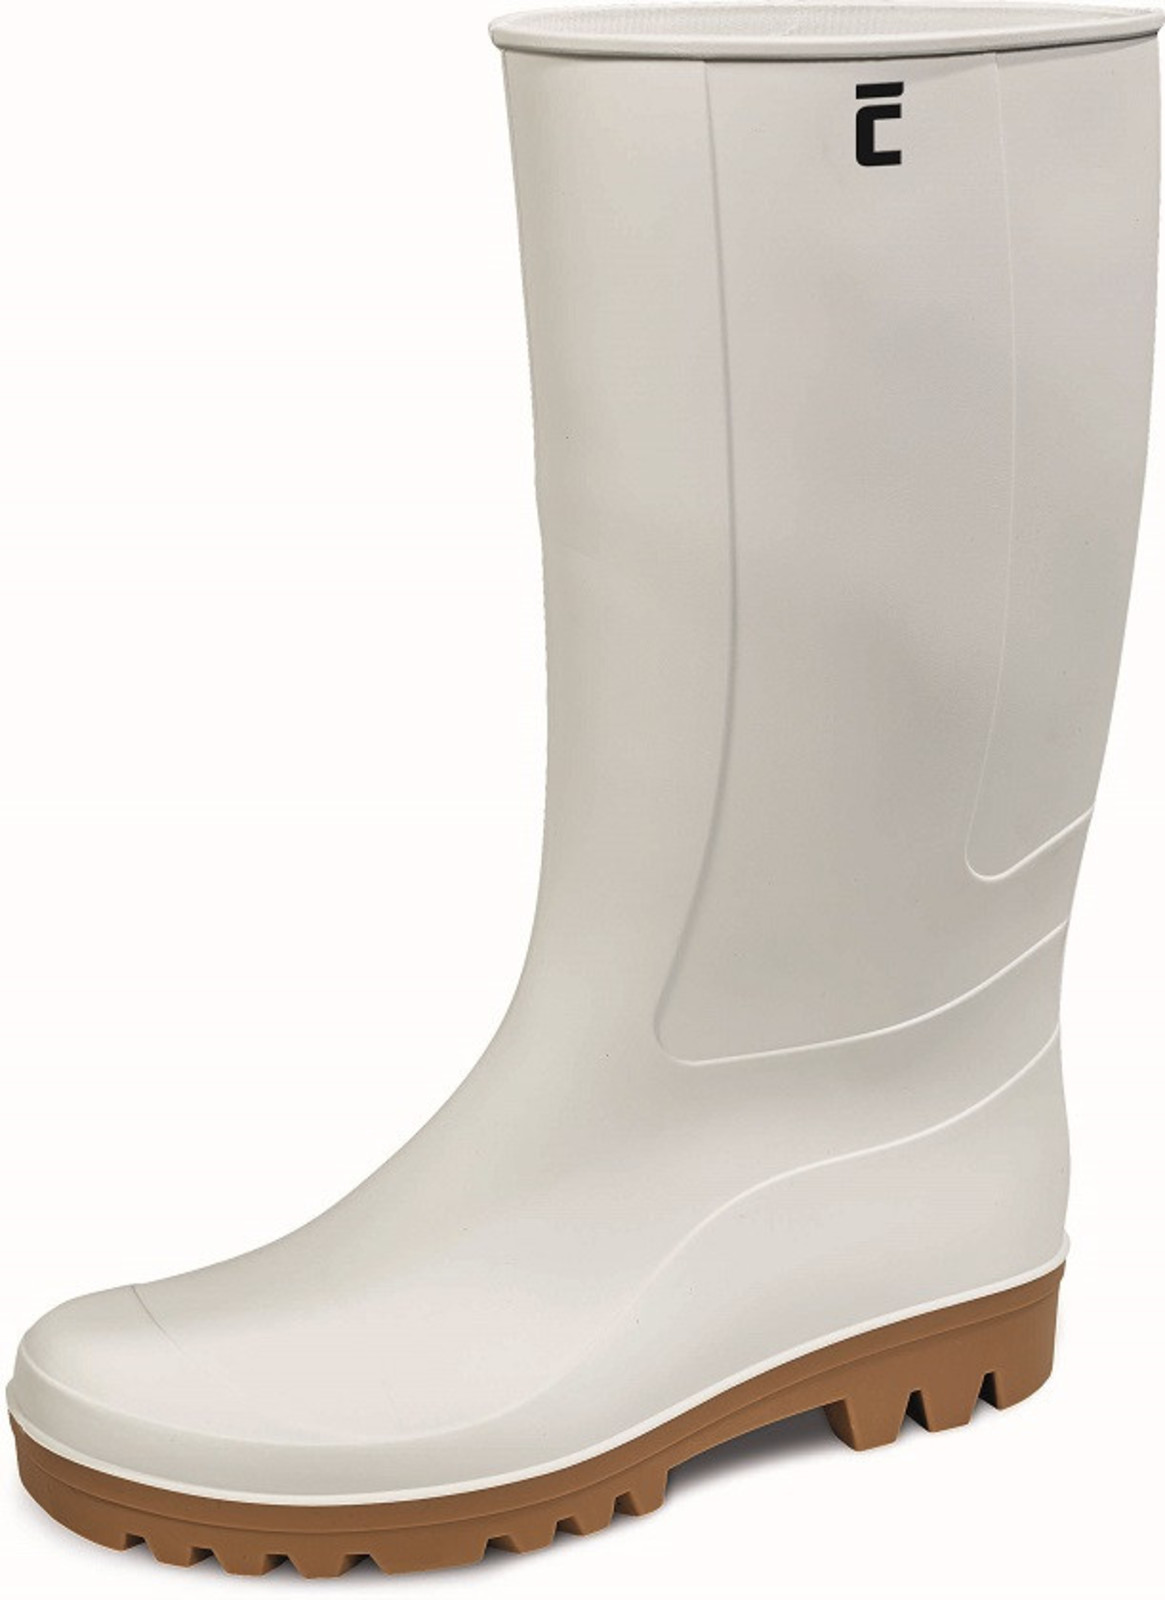 Gumáky Boots BC Food O4  - veľkosť: 42, farba: biela